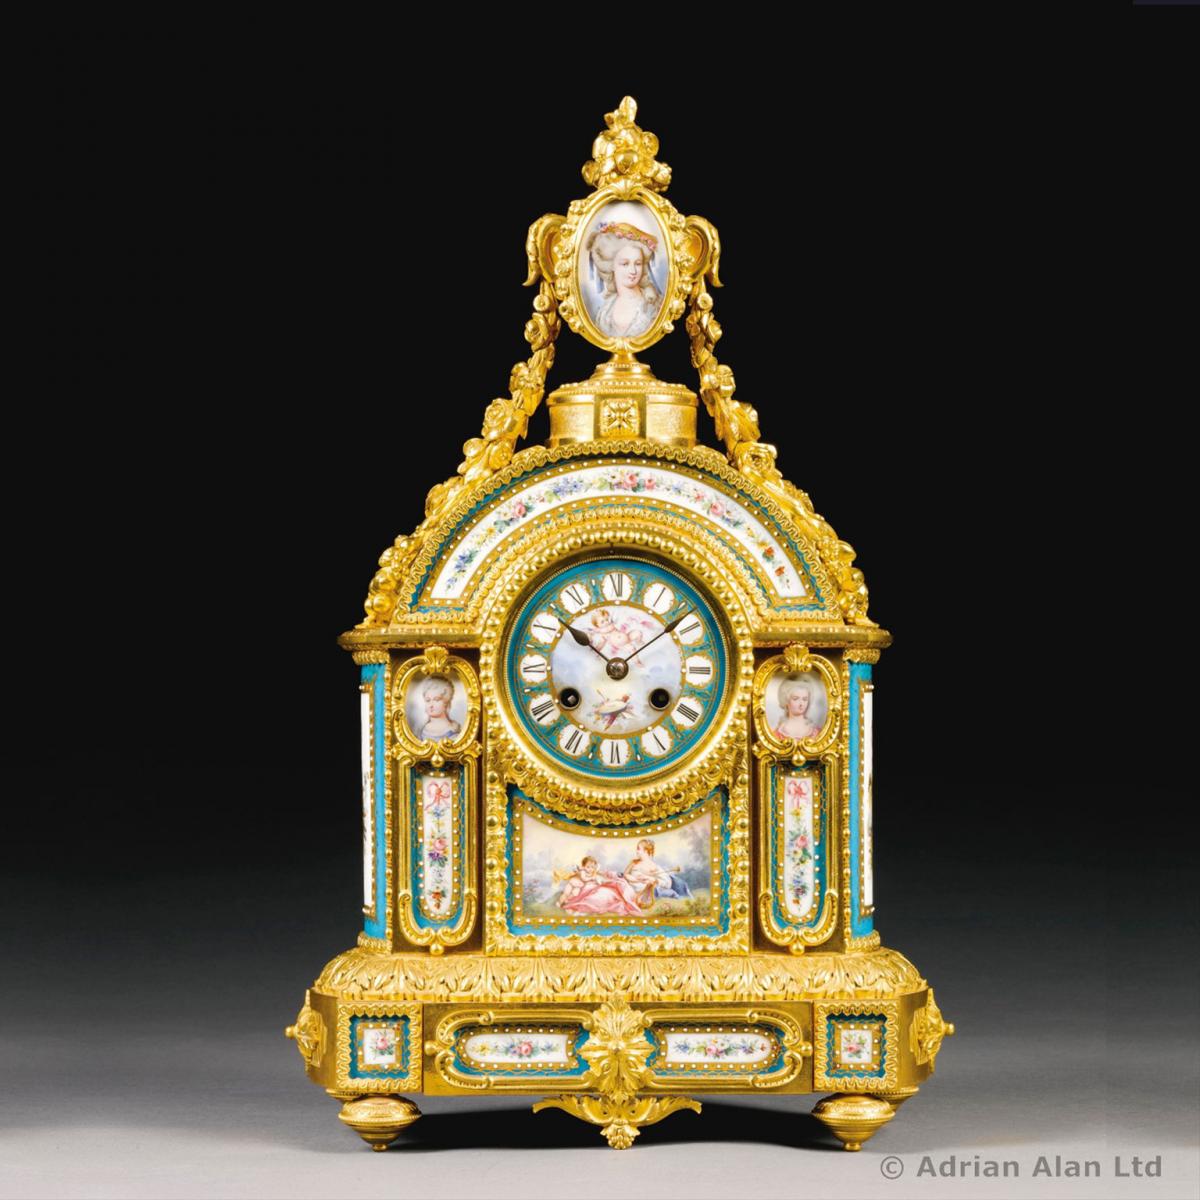 A Fine Sèvres-Style Porcelain Mantel Clock